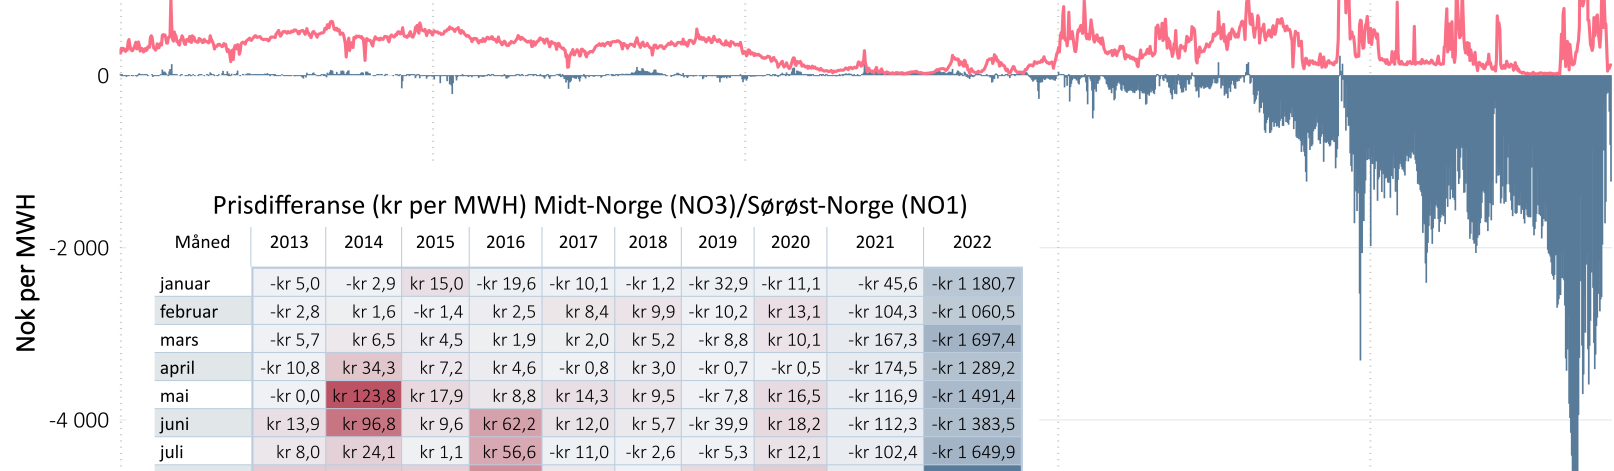 Kraftpris Midt-Norge og prisdiferanse Midt-Norge og Sørøst-Norge